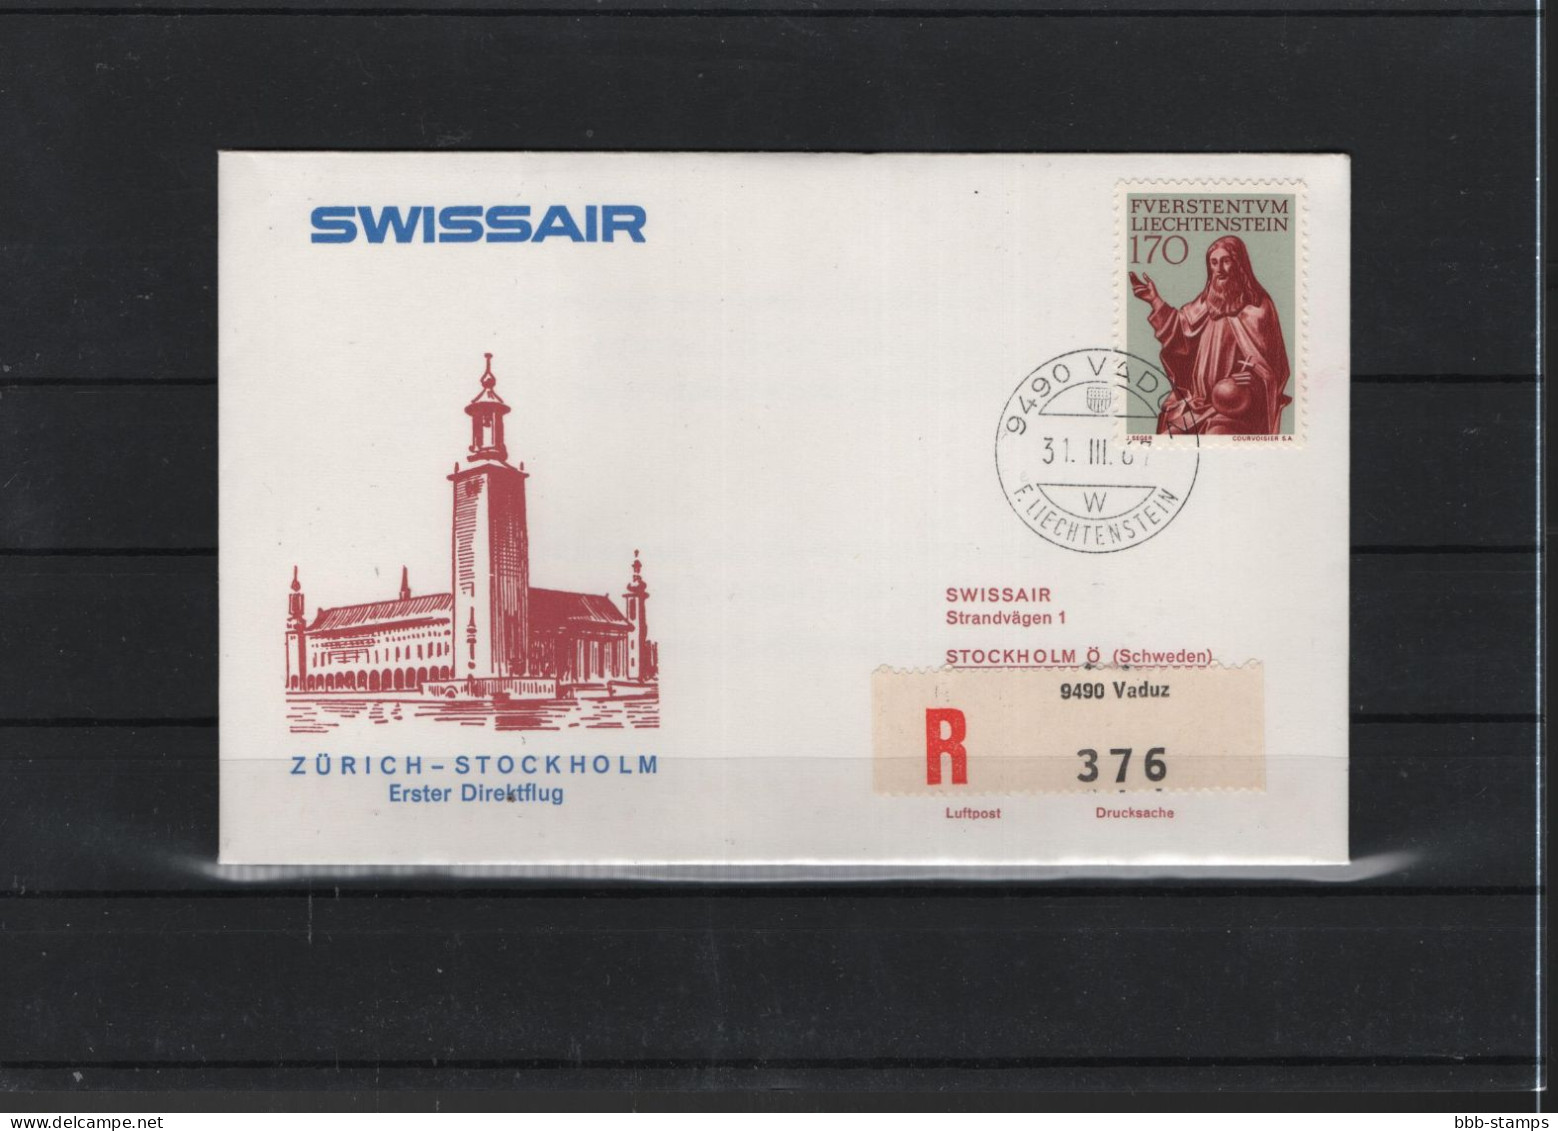 Schweiz Air Mail Swissair  FFC  31.3.1967 Zürich - Stockholm - Primeros Vuelos